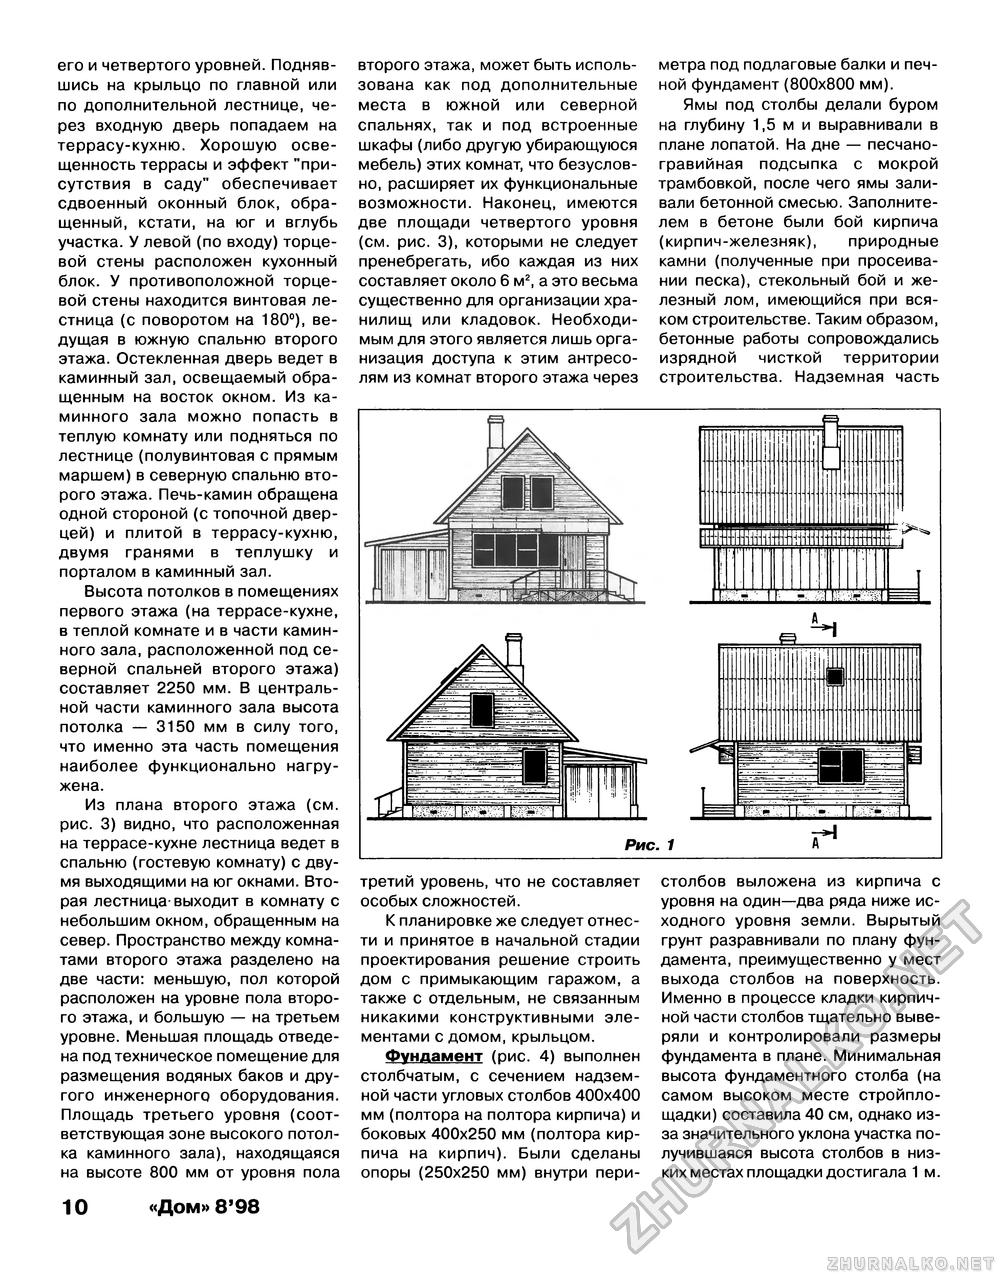 Дом 1998-08, страница 10